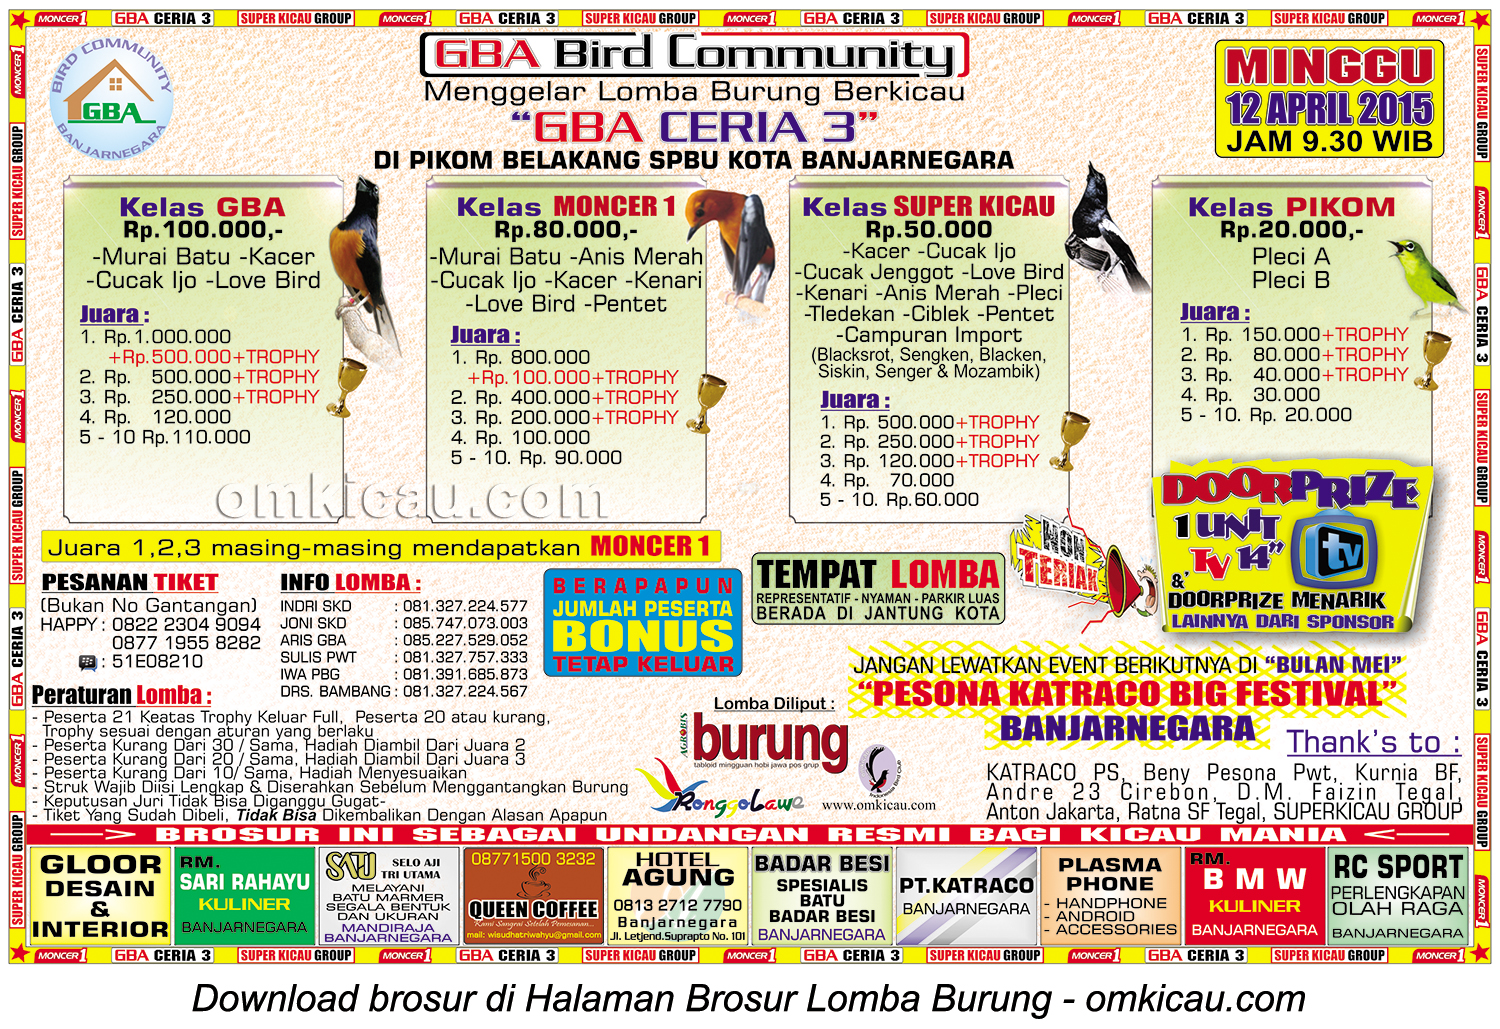 Brosur Lomba Burung Berkicau GBA Ceria 3, Banjarnegara, 12 April 2015